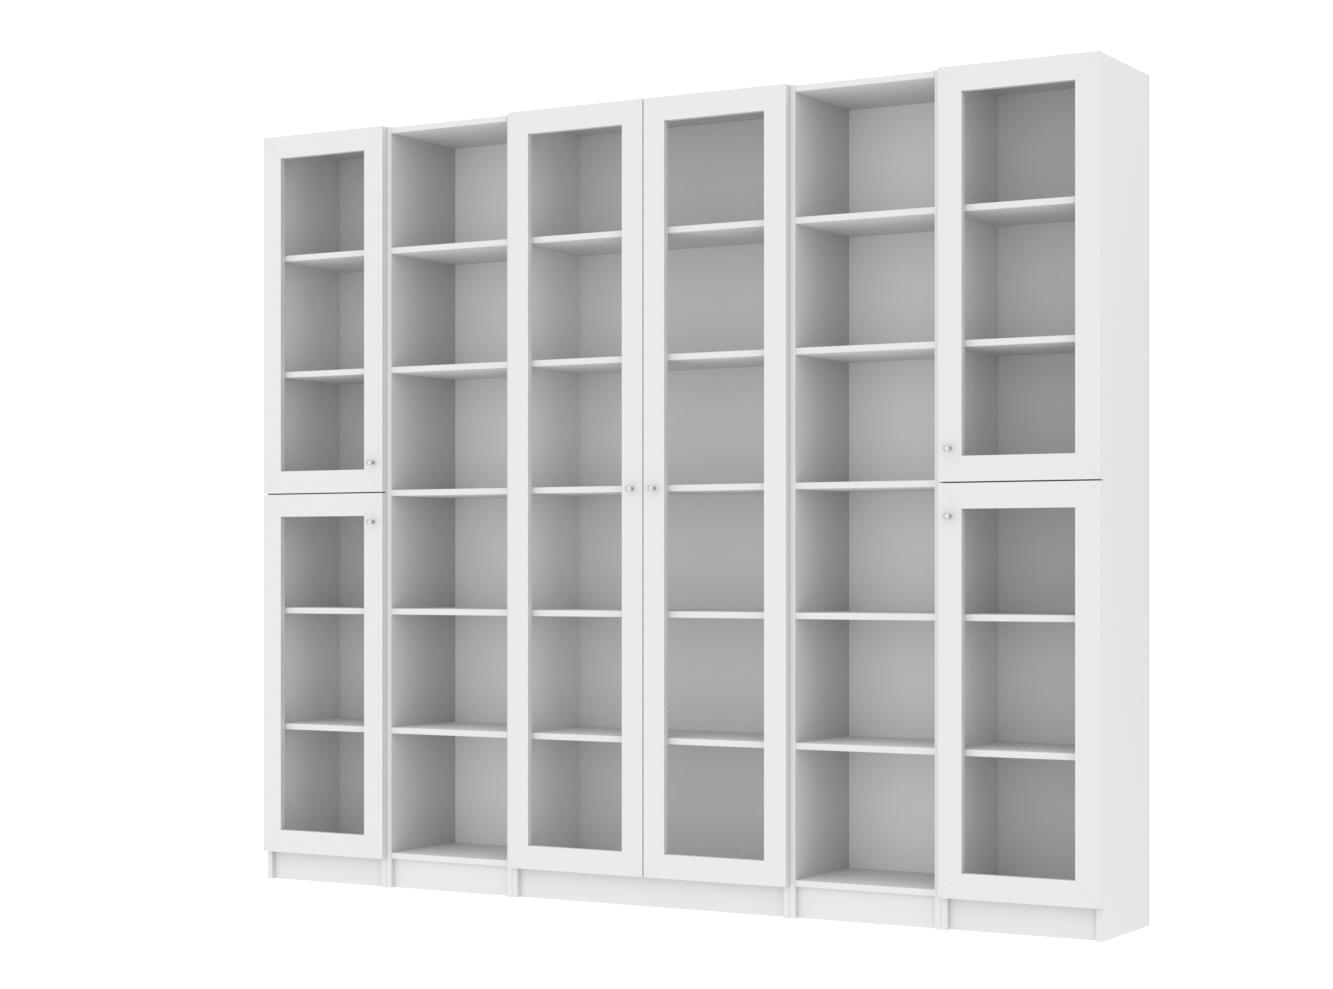 Изображение товара Книжный шкаф Билли 52 white ИКЕА (IKEA), 240x30x202 см на сайте adeta.ru